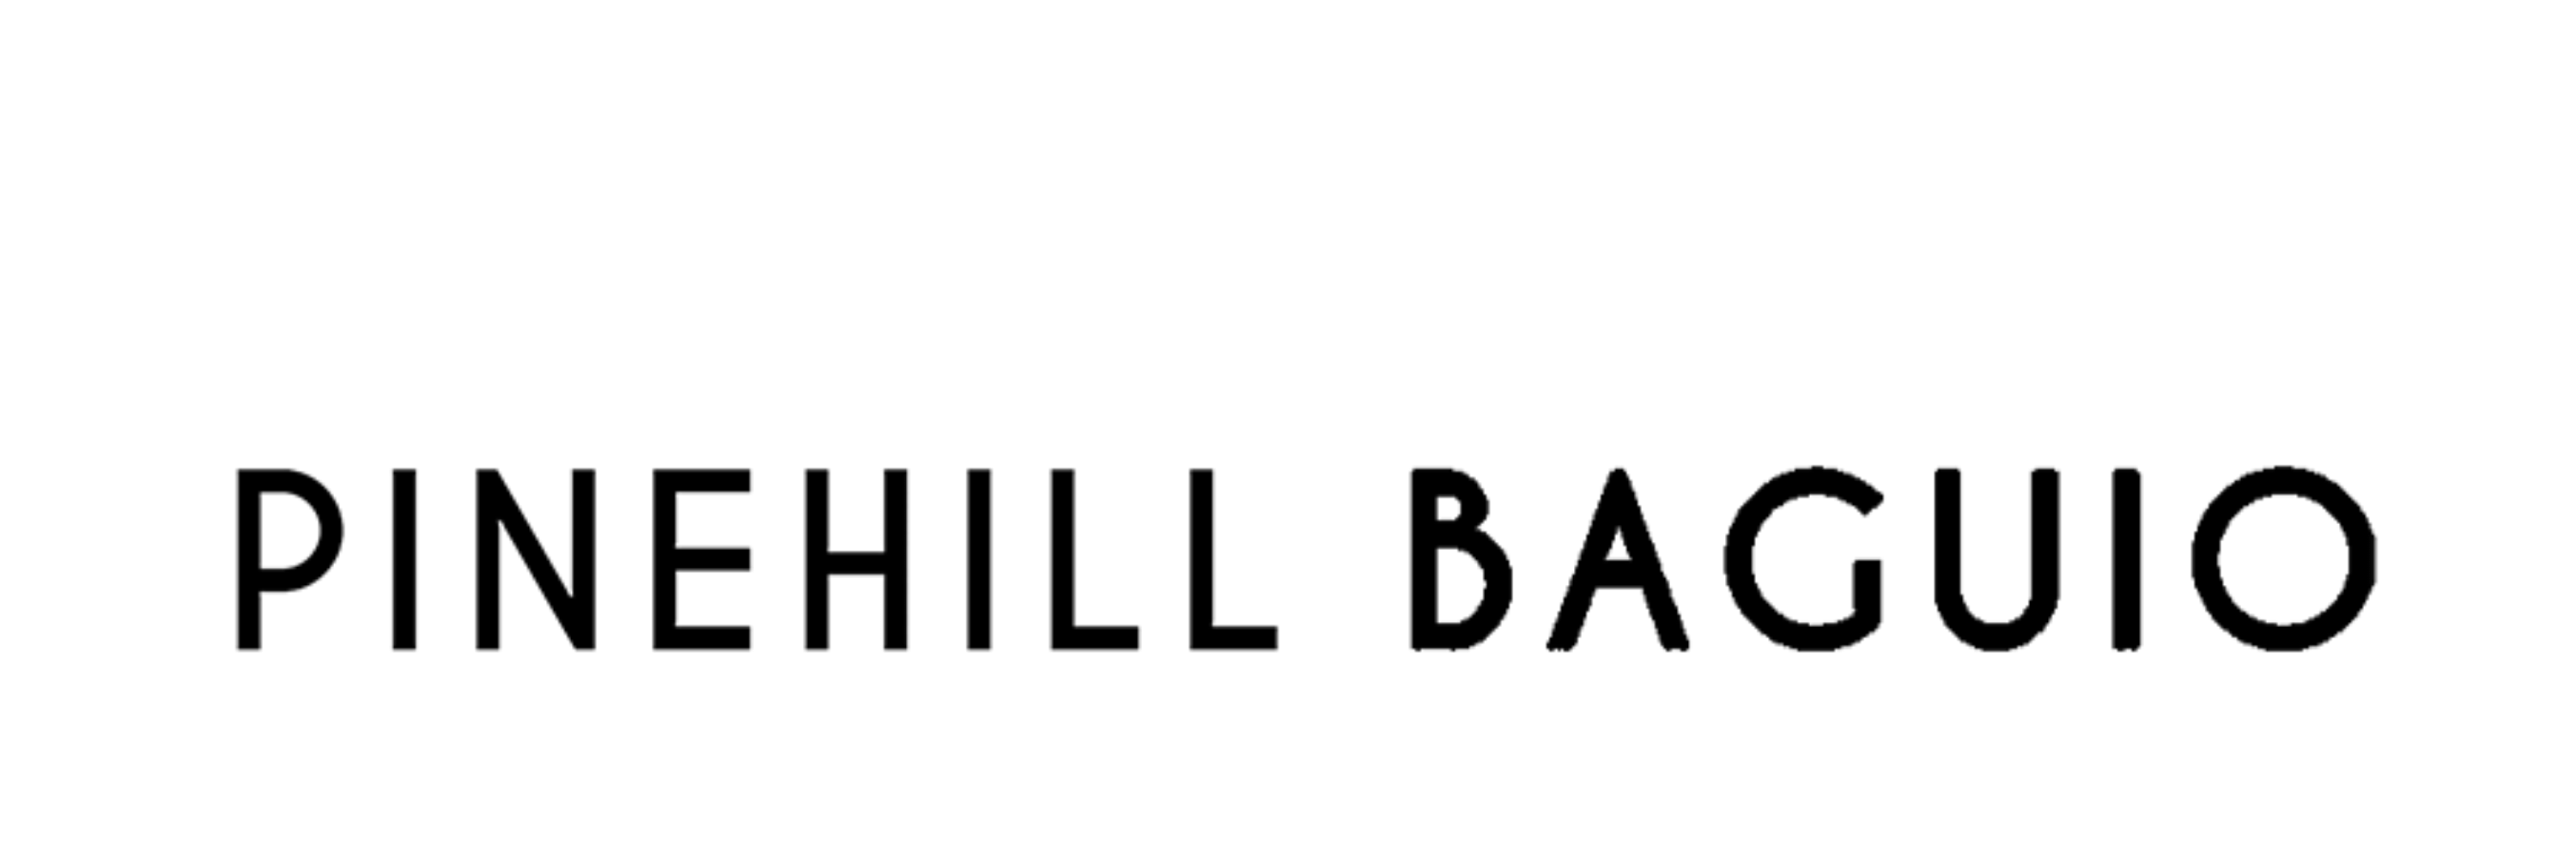 pinehill logo